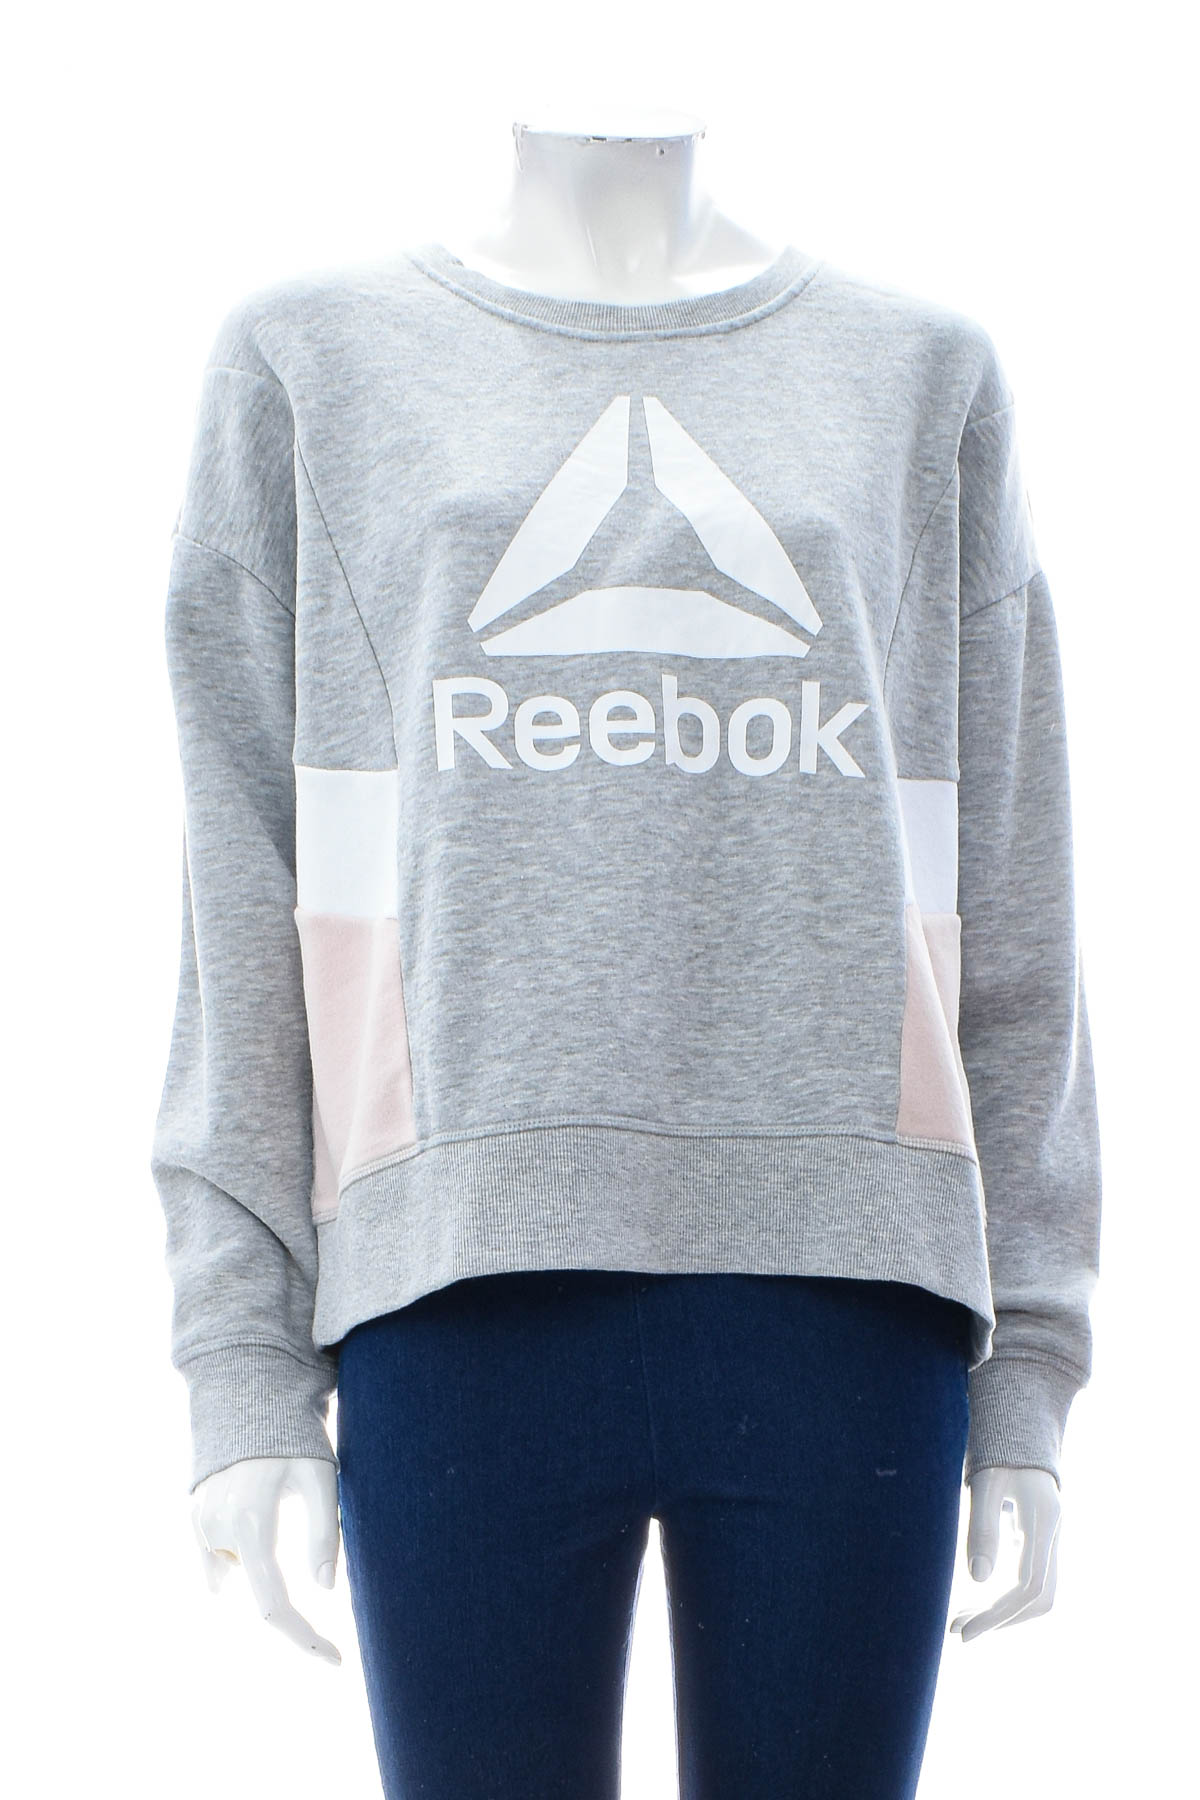 Γυναικεία μπλούζα - Reebok - 0